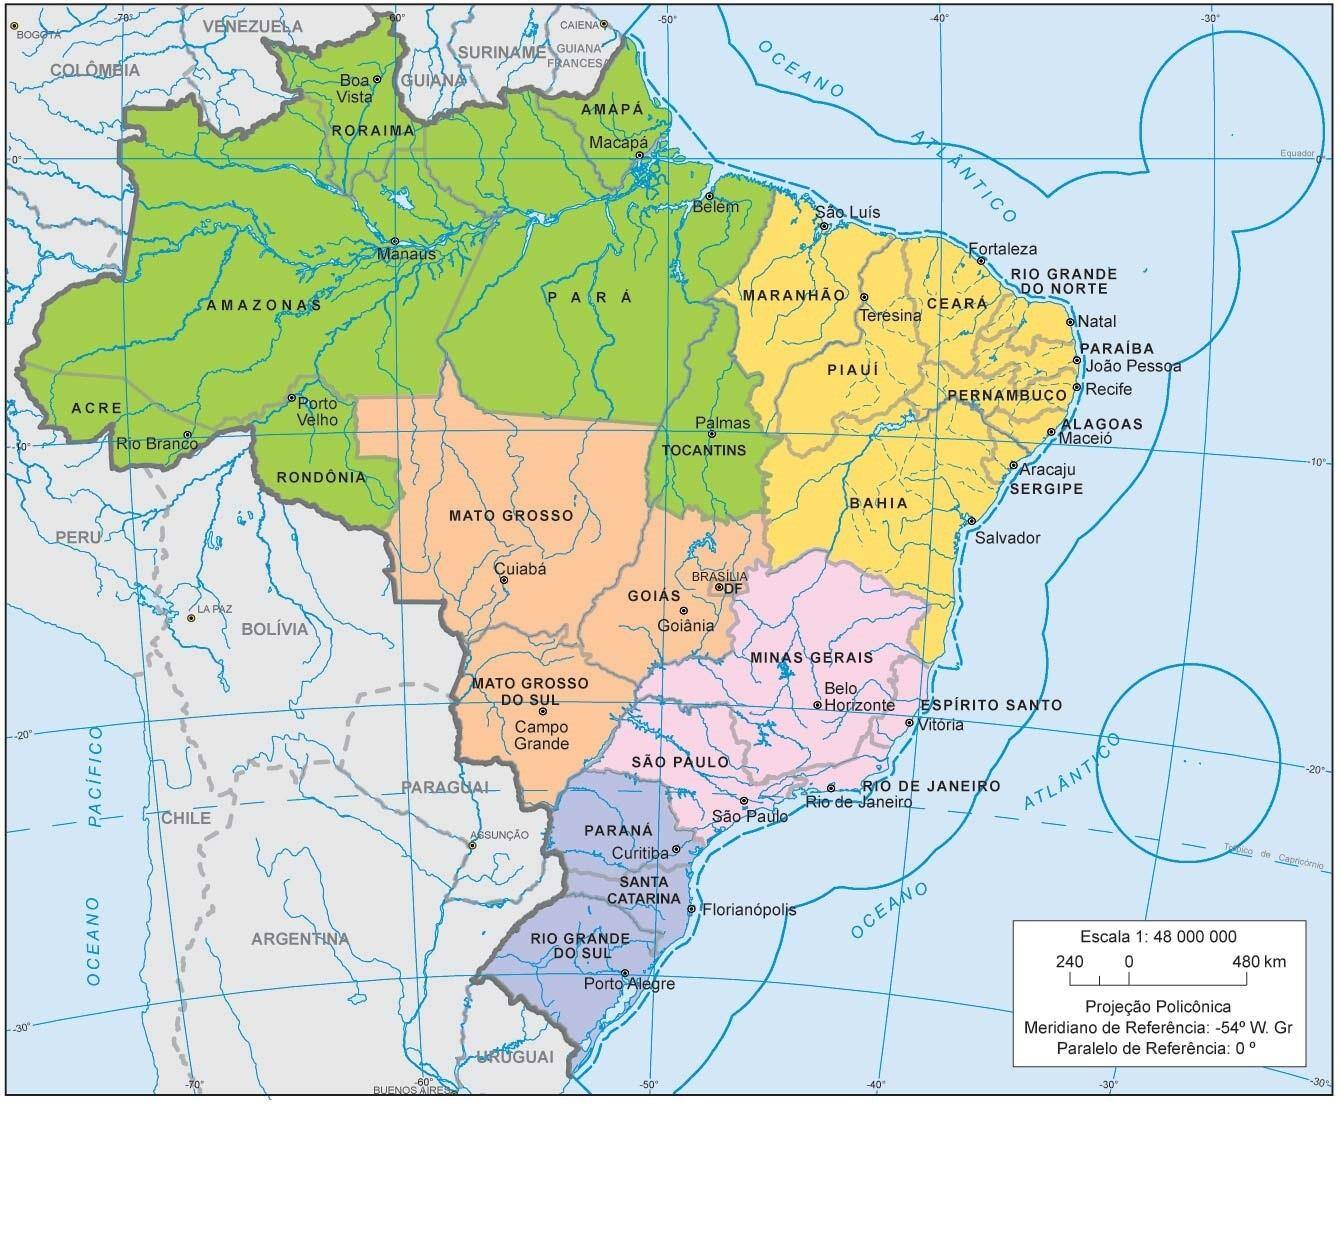 Eleições serão definidas no 2º turno em 18 capitais brasileiras